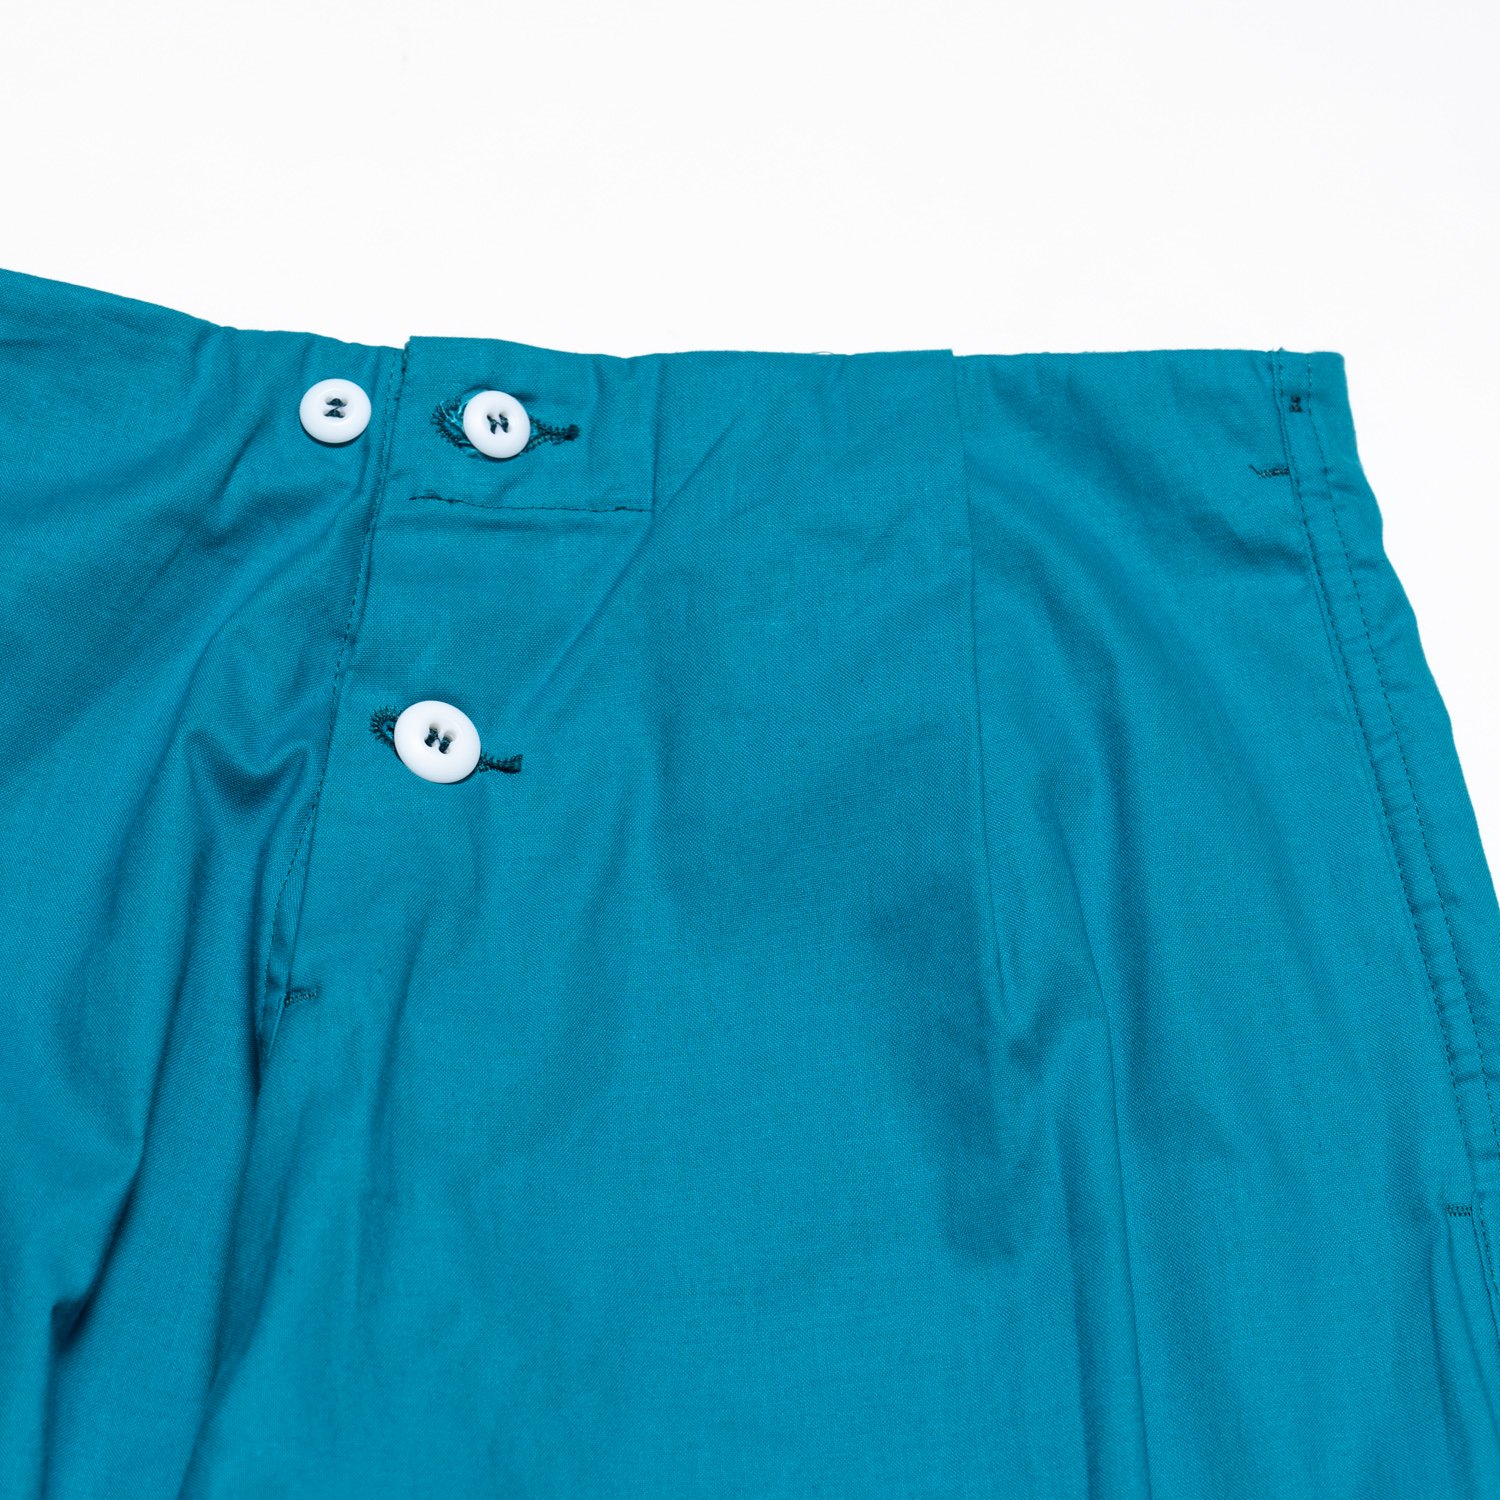 TUKI * 0041 Pajamas * Turquoise